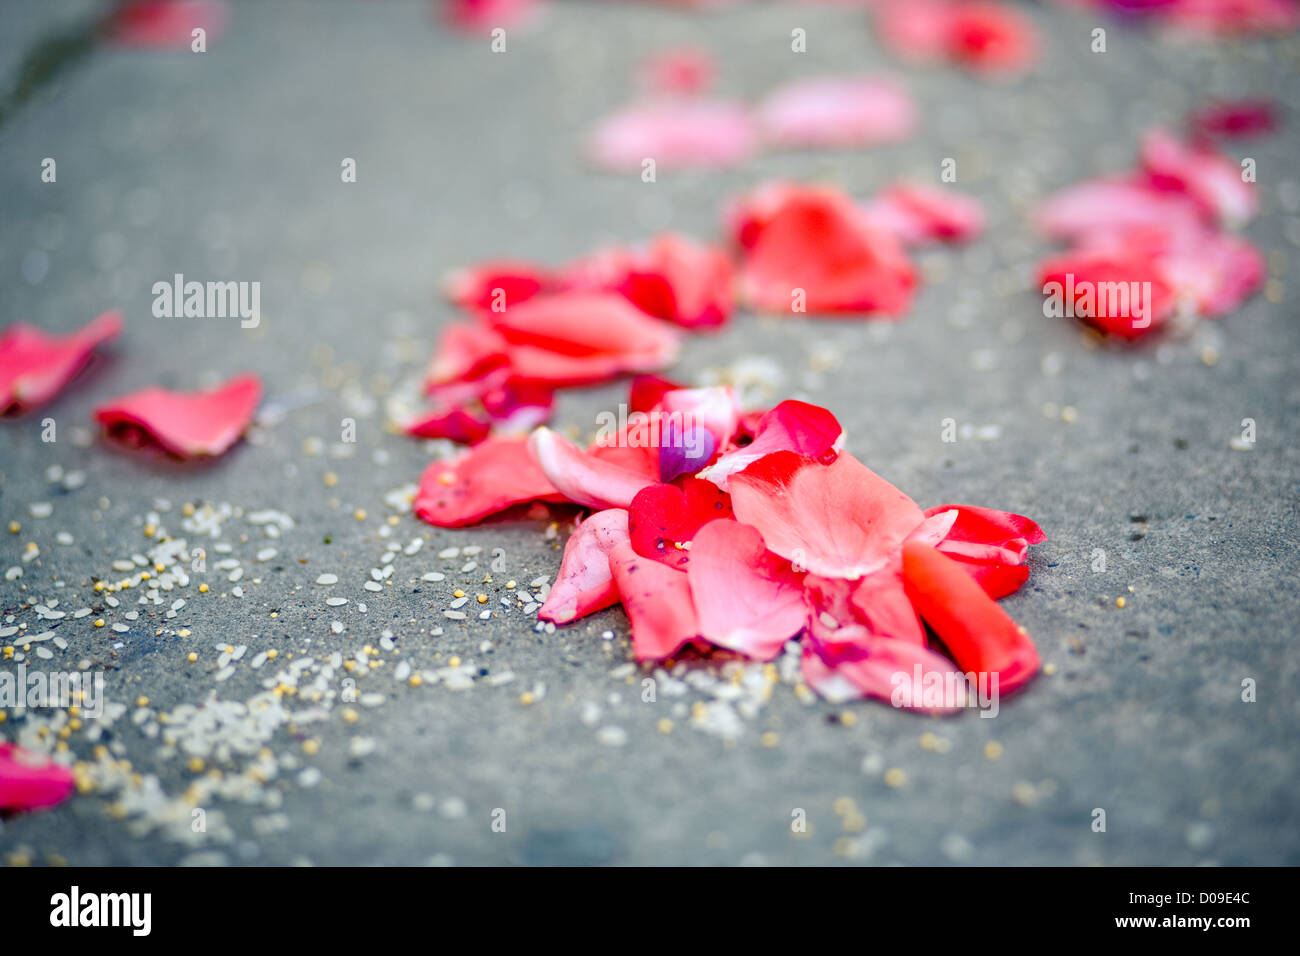 Sparse pink rose petals on asphalt after wedding ceremony, horisontal image. Stock Photo